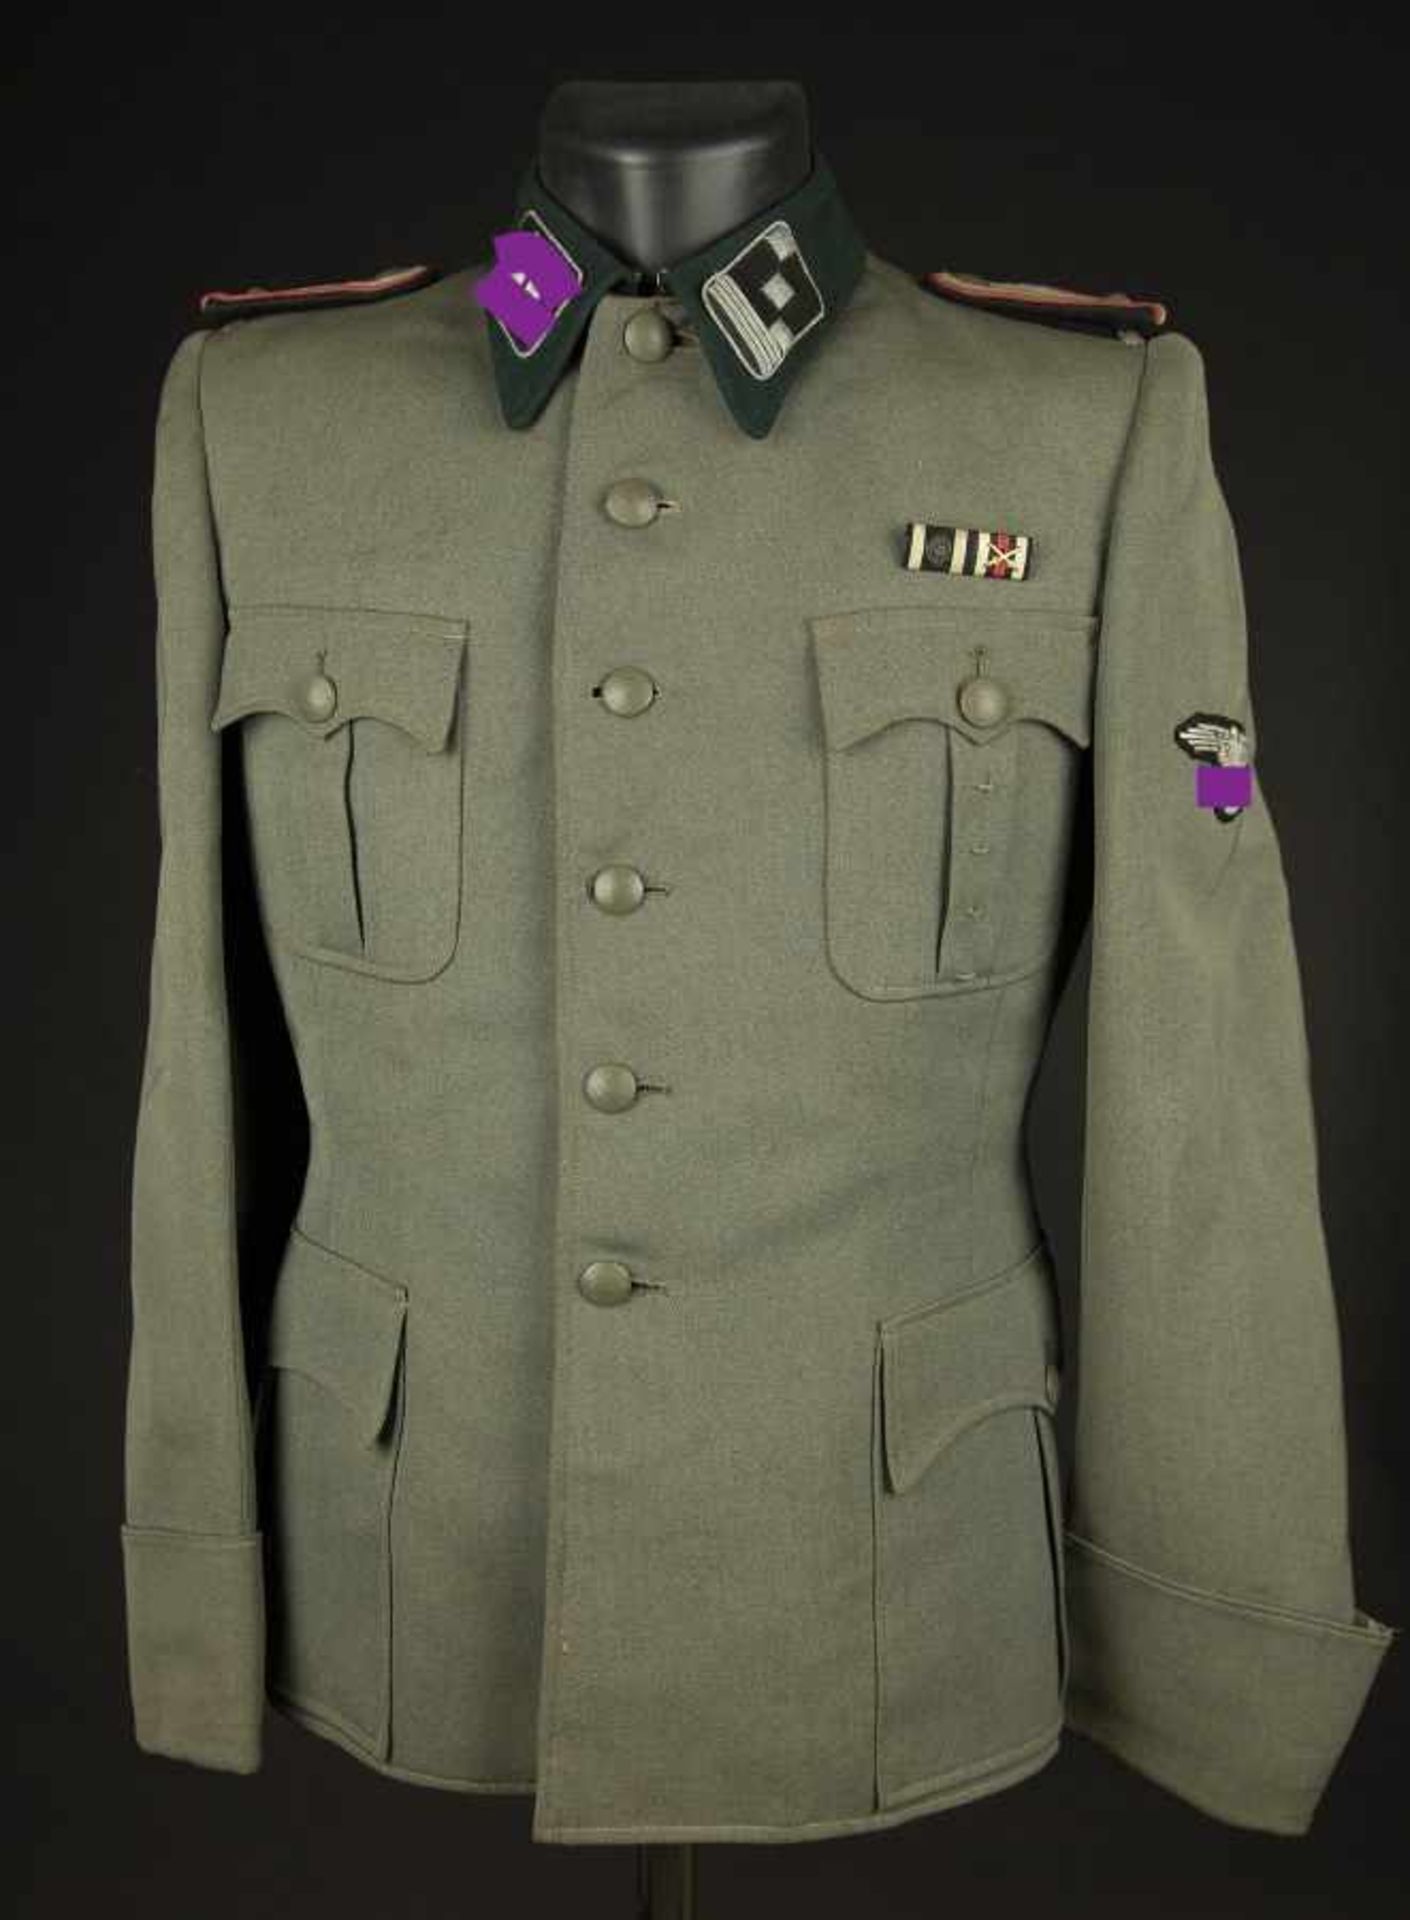 Vareuse de Hauptsturmführer de la Waffen SSEn gabardine Feldgrau, tous les boutons sont présents.